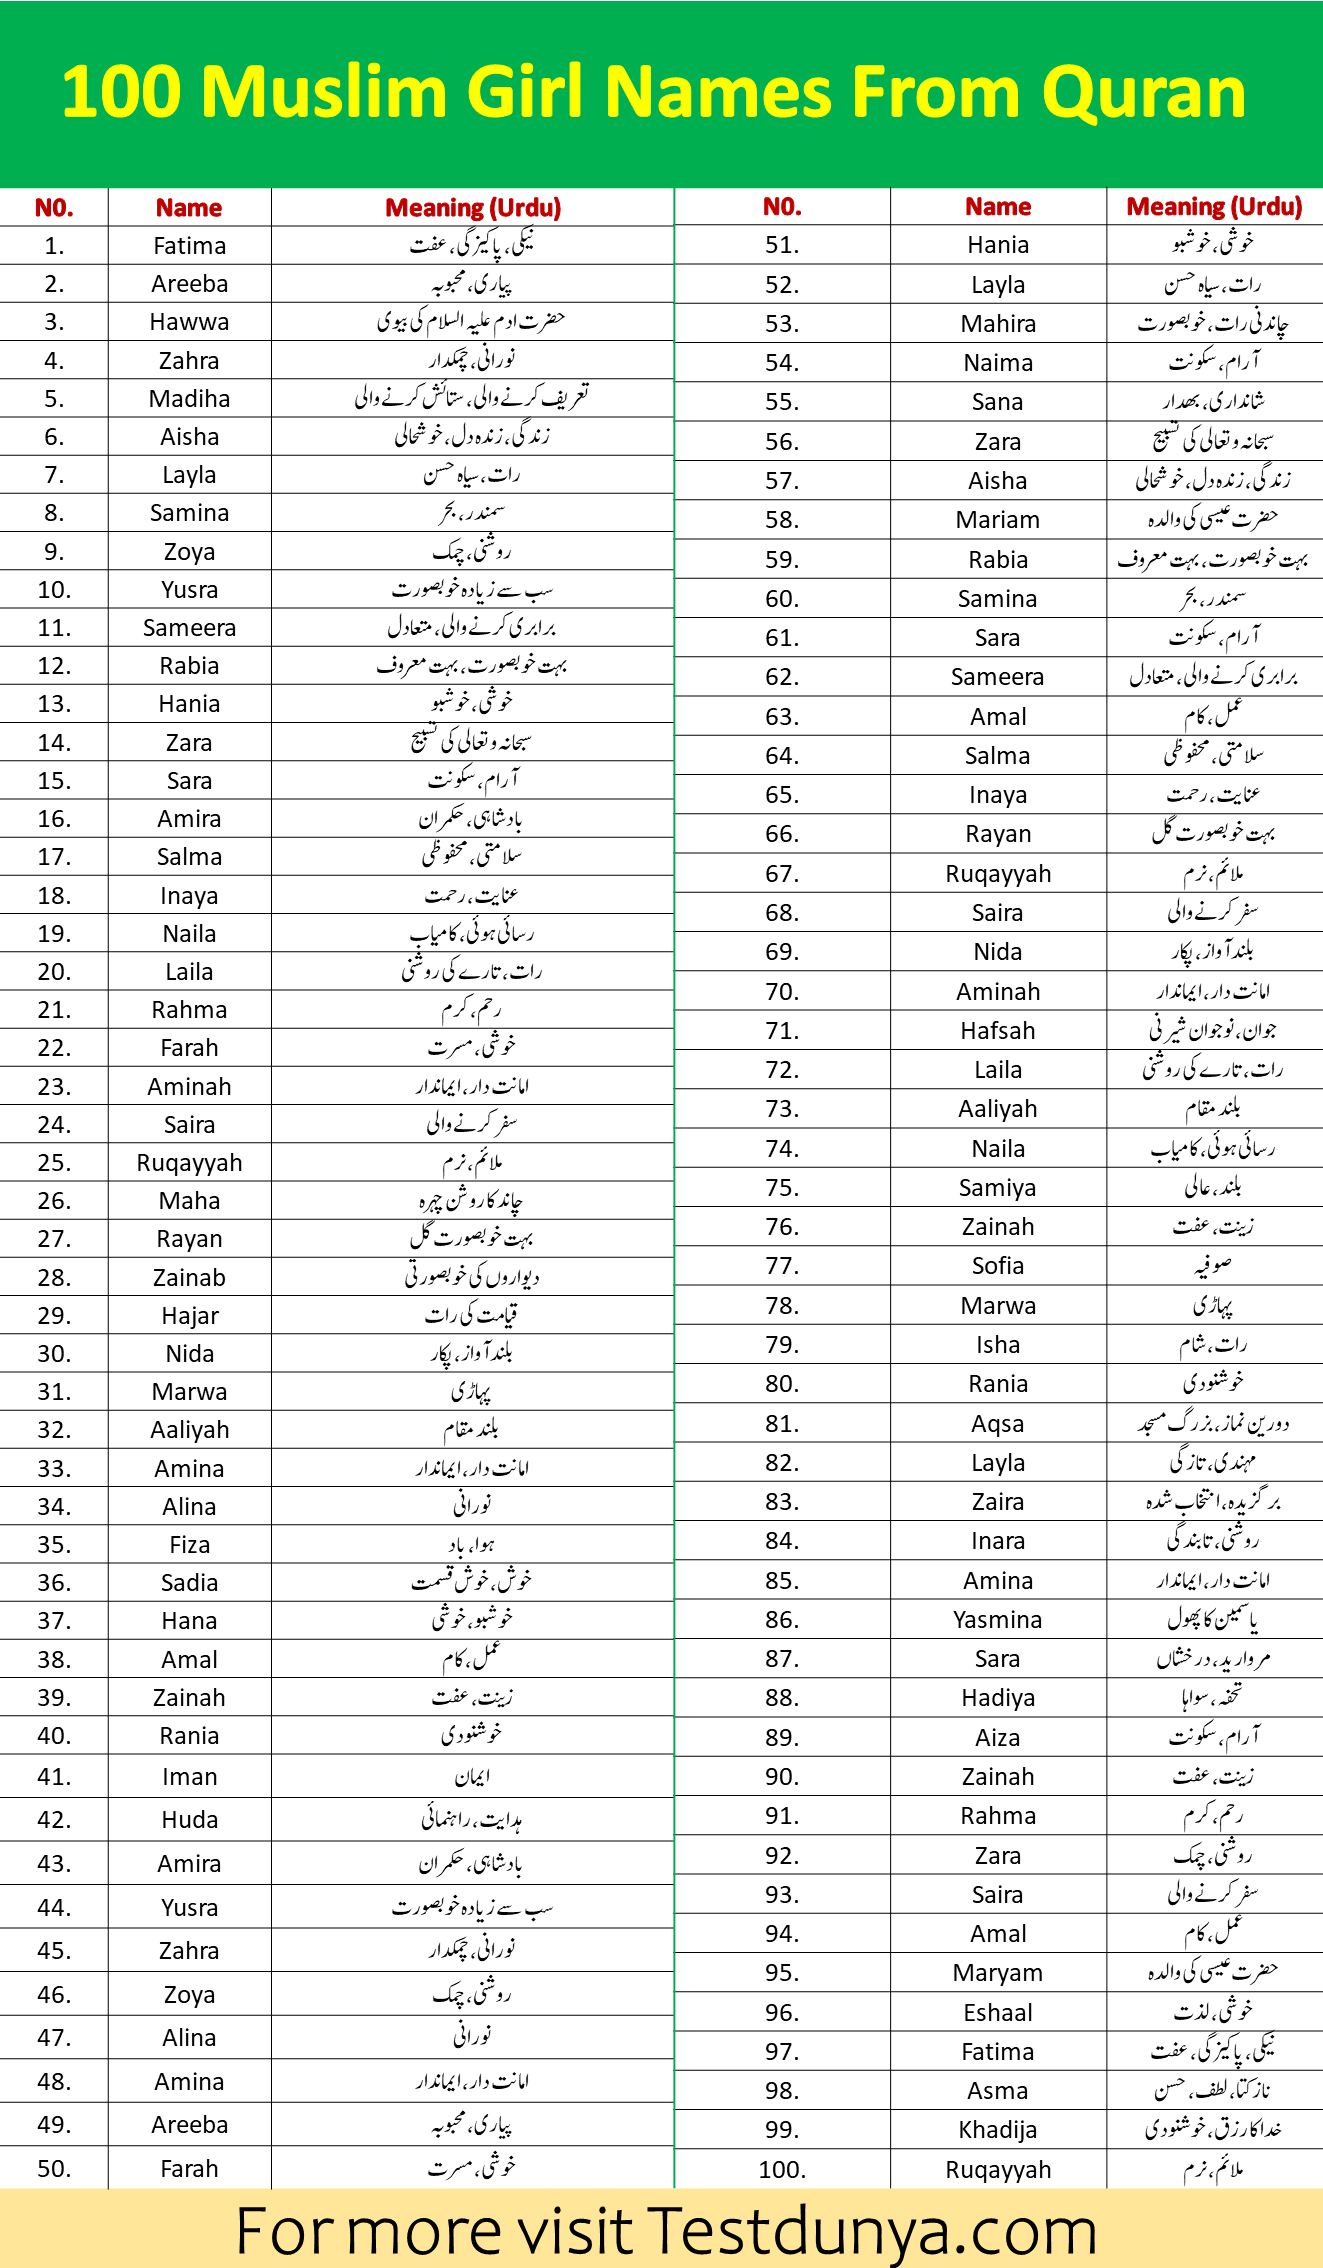 Muslim Girl Names From Quran